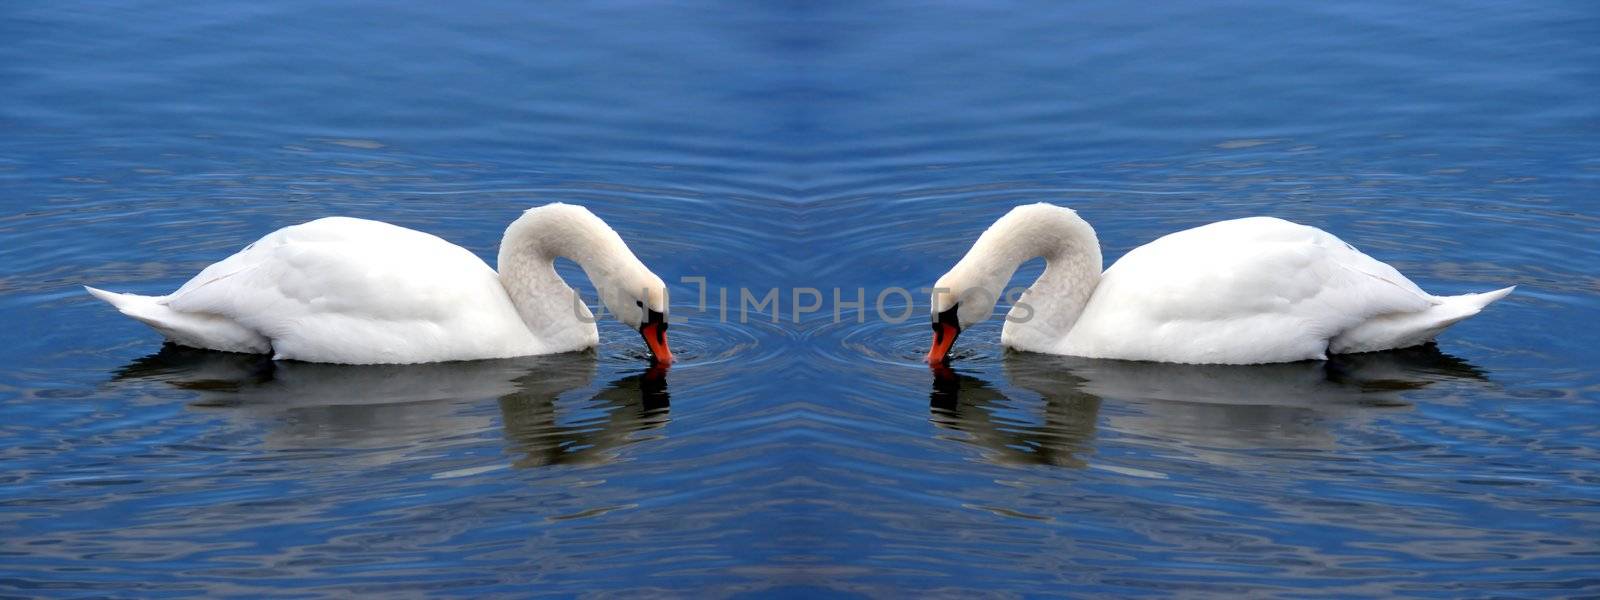 Swan Hearts by berkan